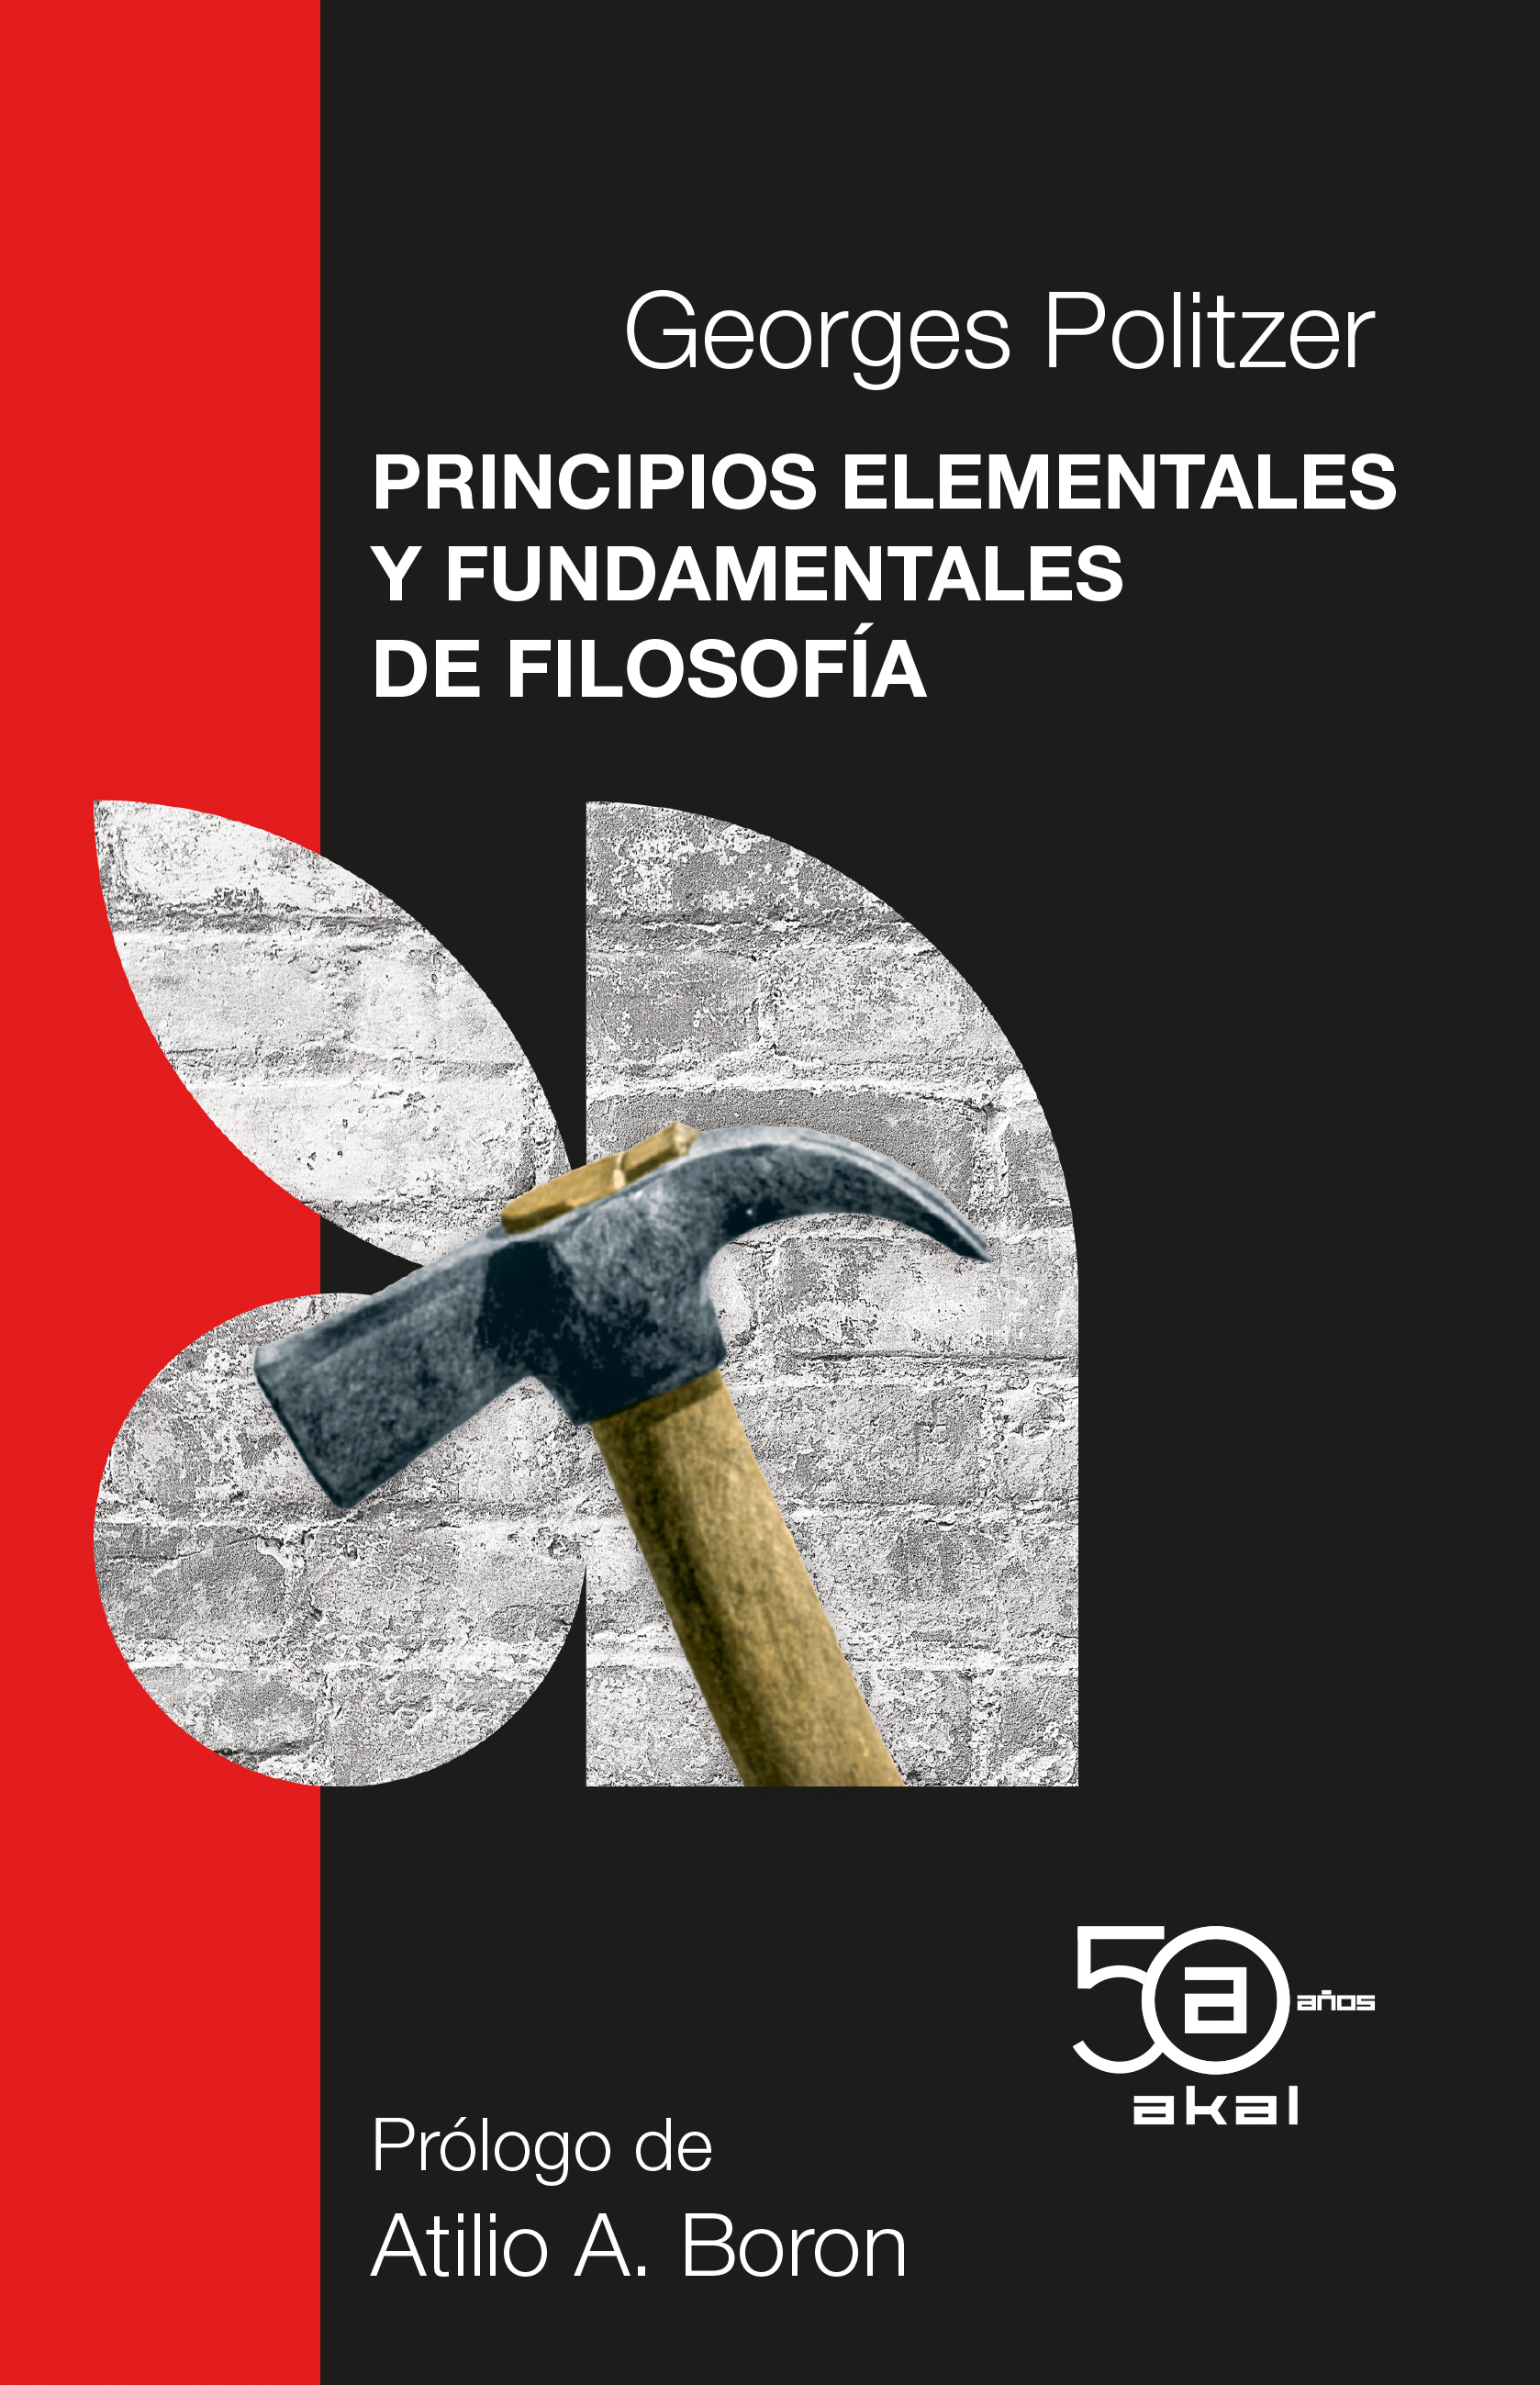 PRINCIPIOS ELEMENTALES Y FUNDAMENTALES DE FILOSOFÍA - Georges Politzer